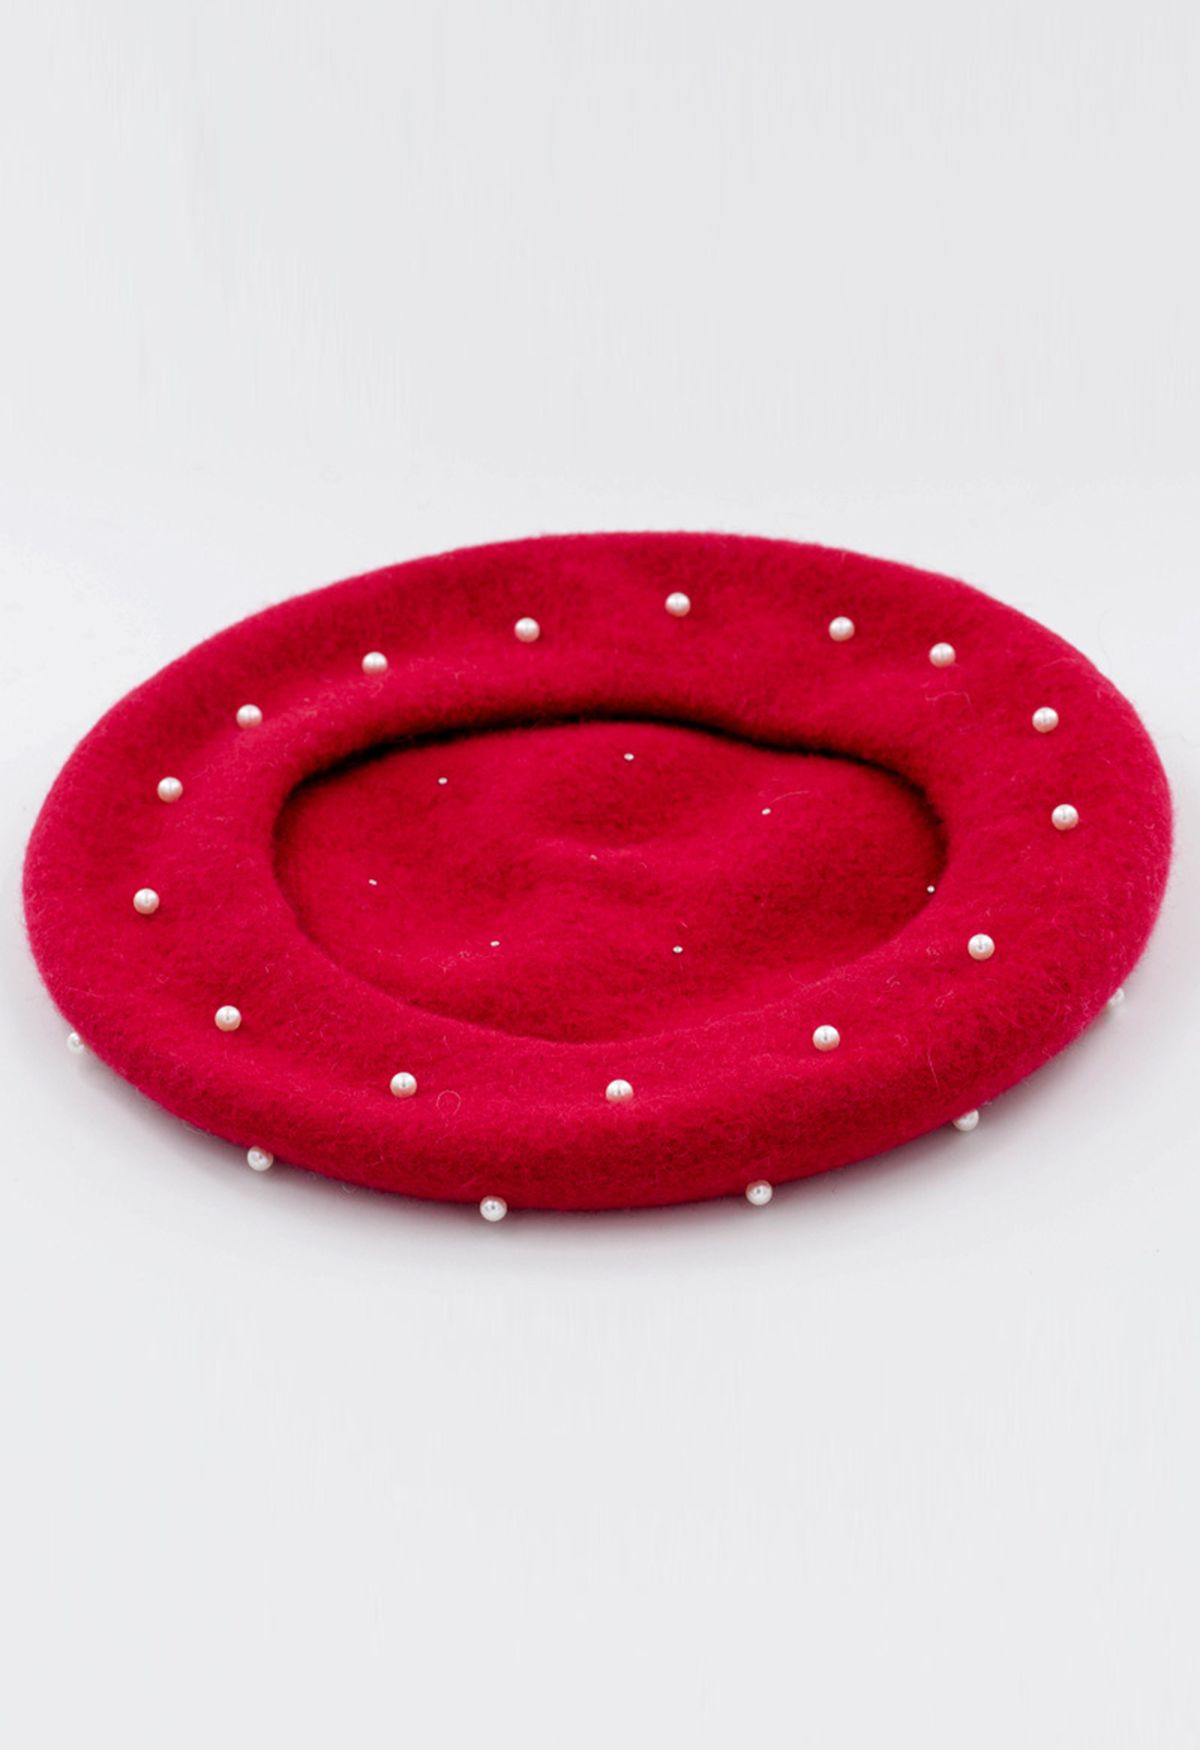 قبعة بيريه مصنوعة يدويًا من الصوف واللؤلؤ باللون الأحمر